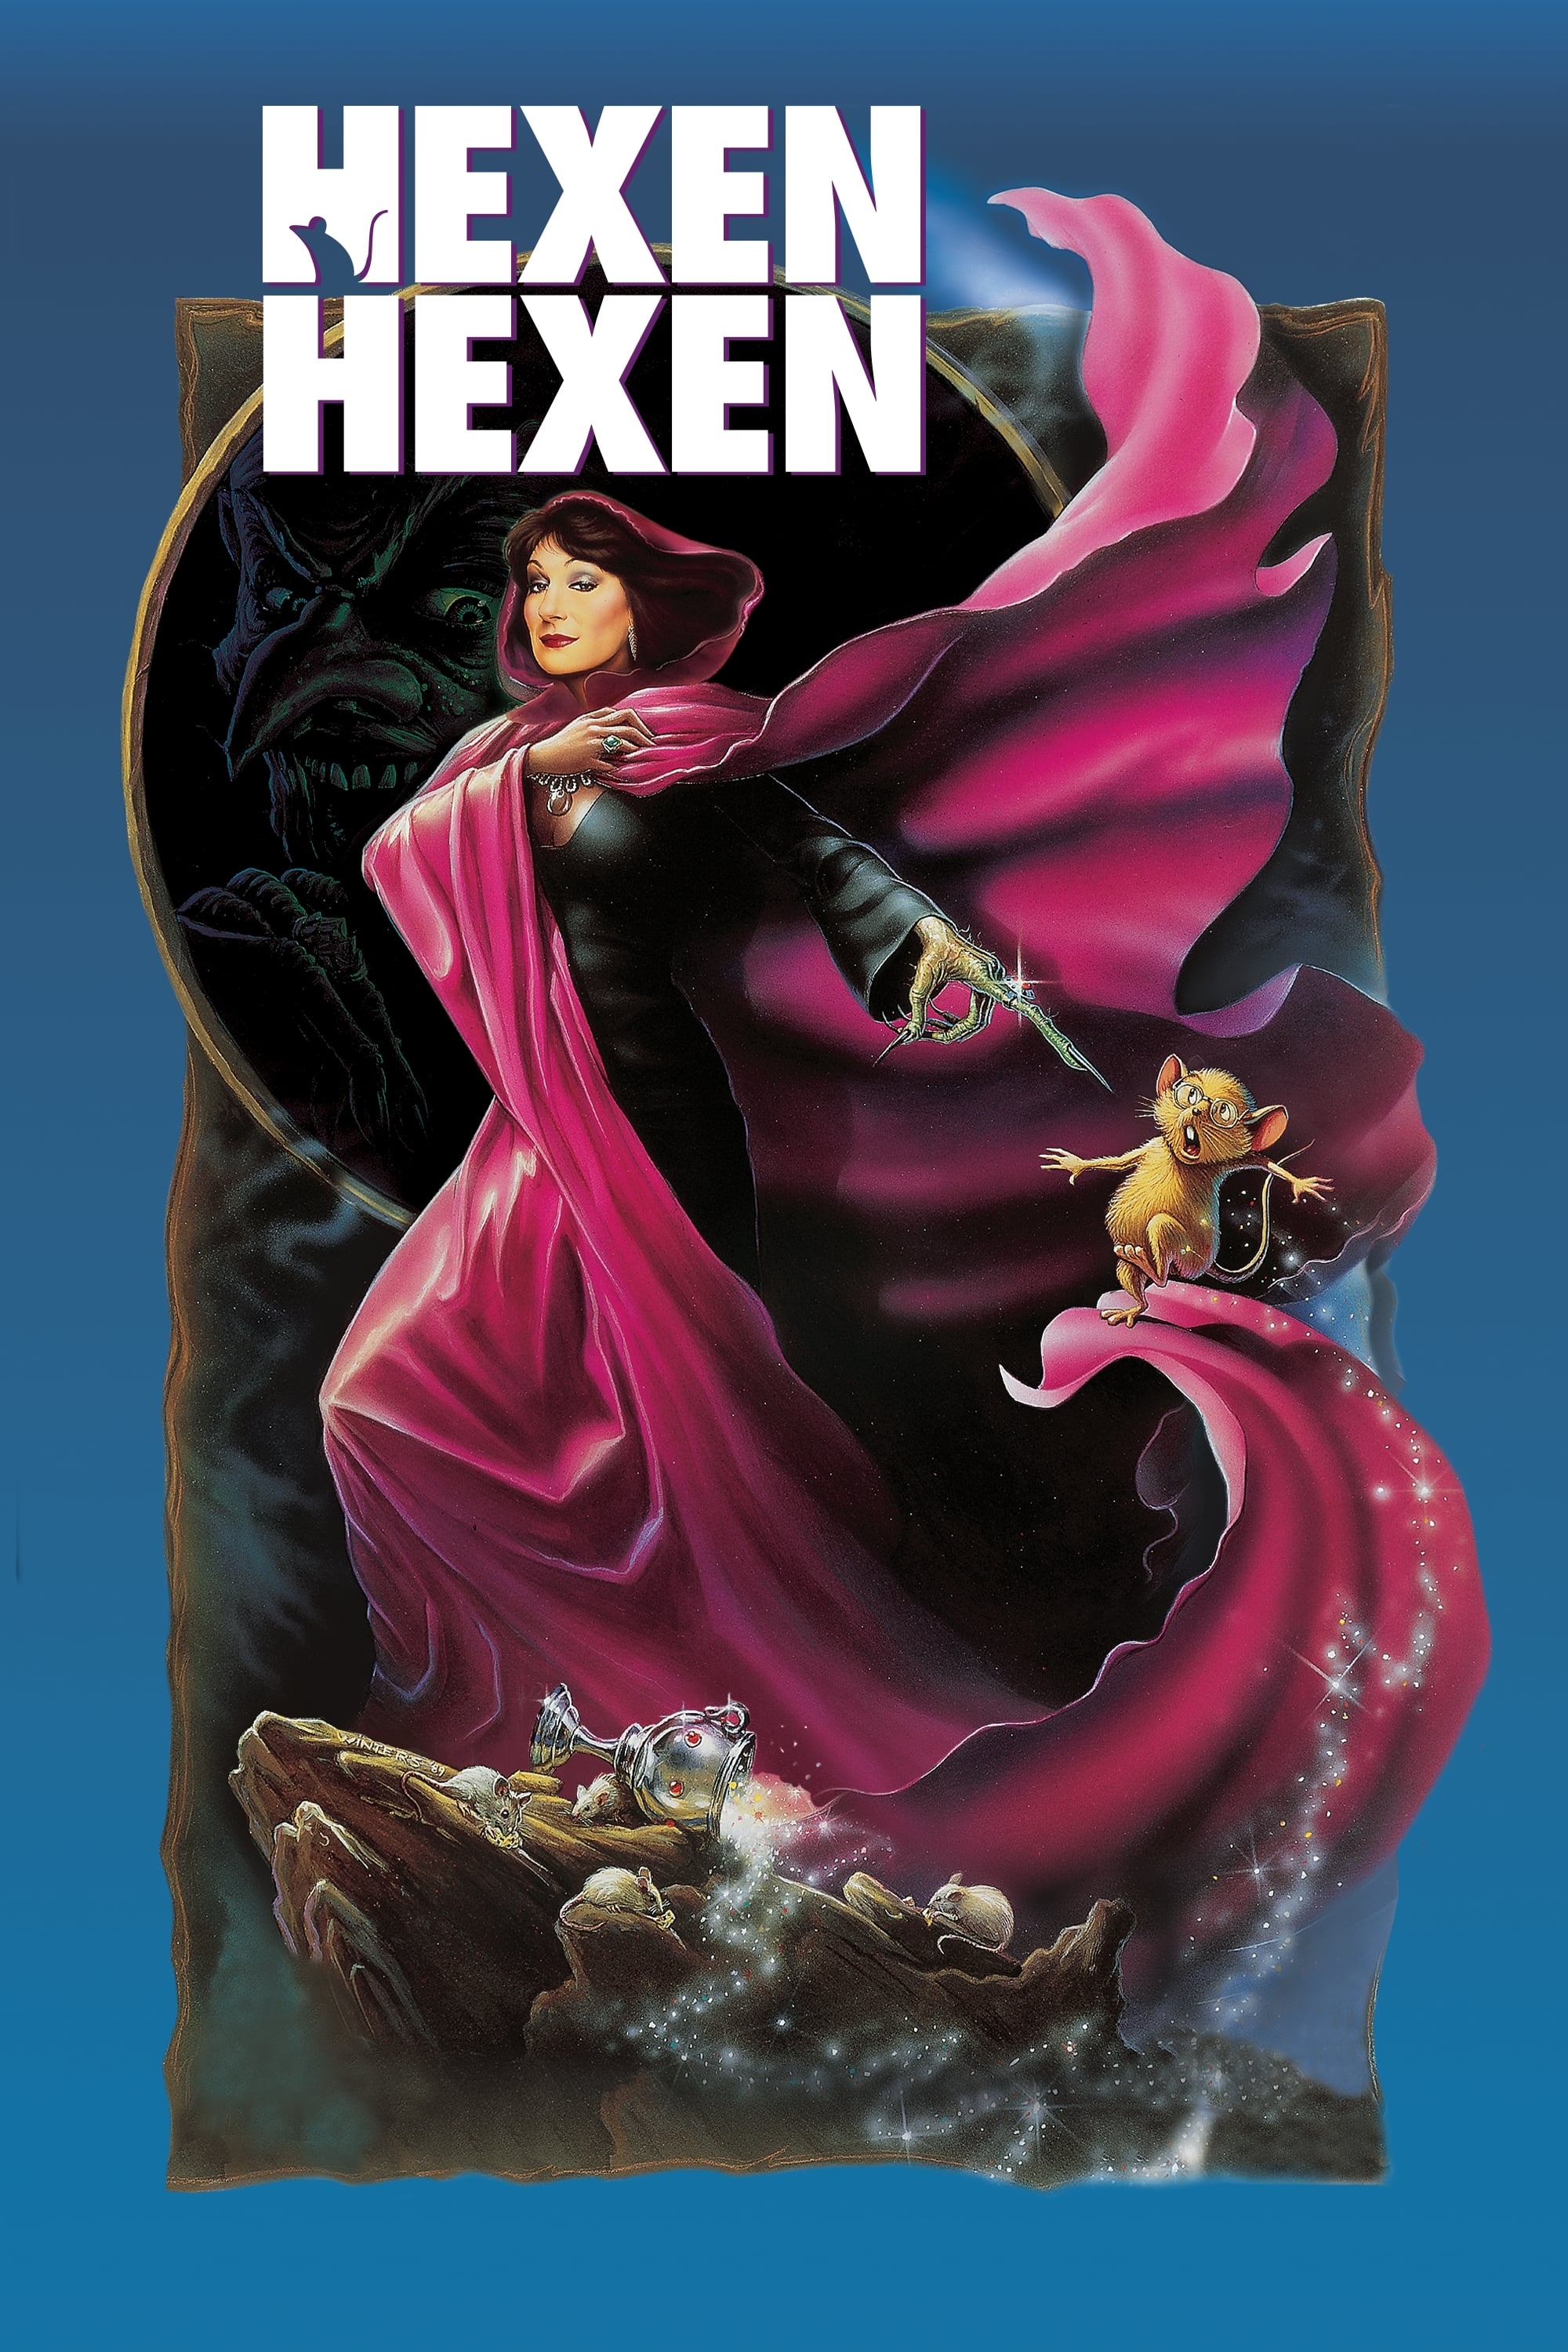 Plakat von "Hexen hexen"